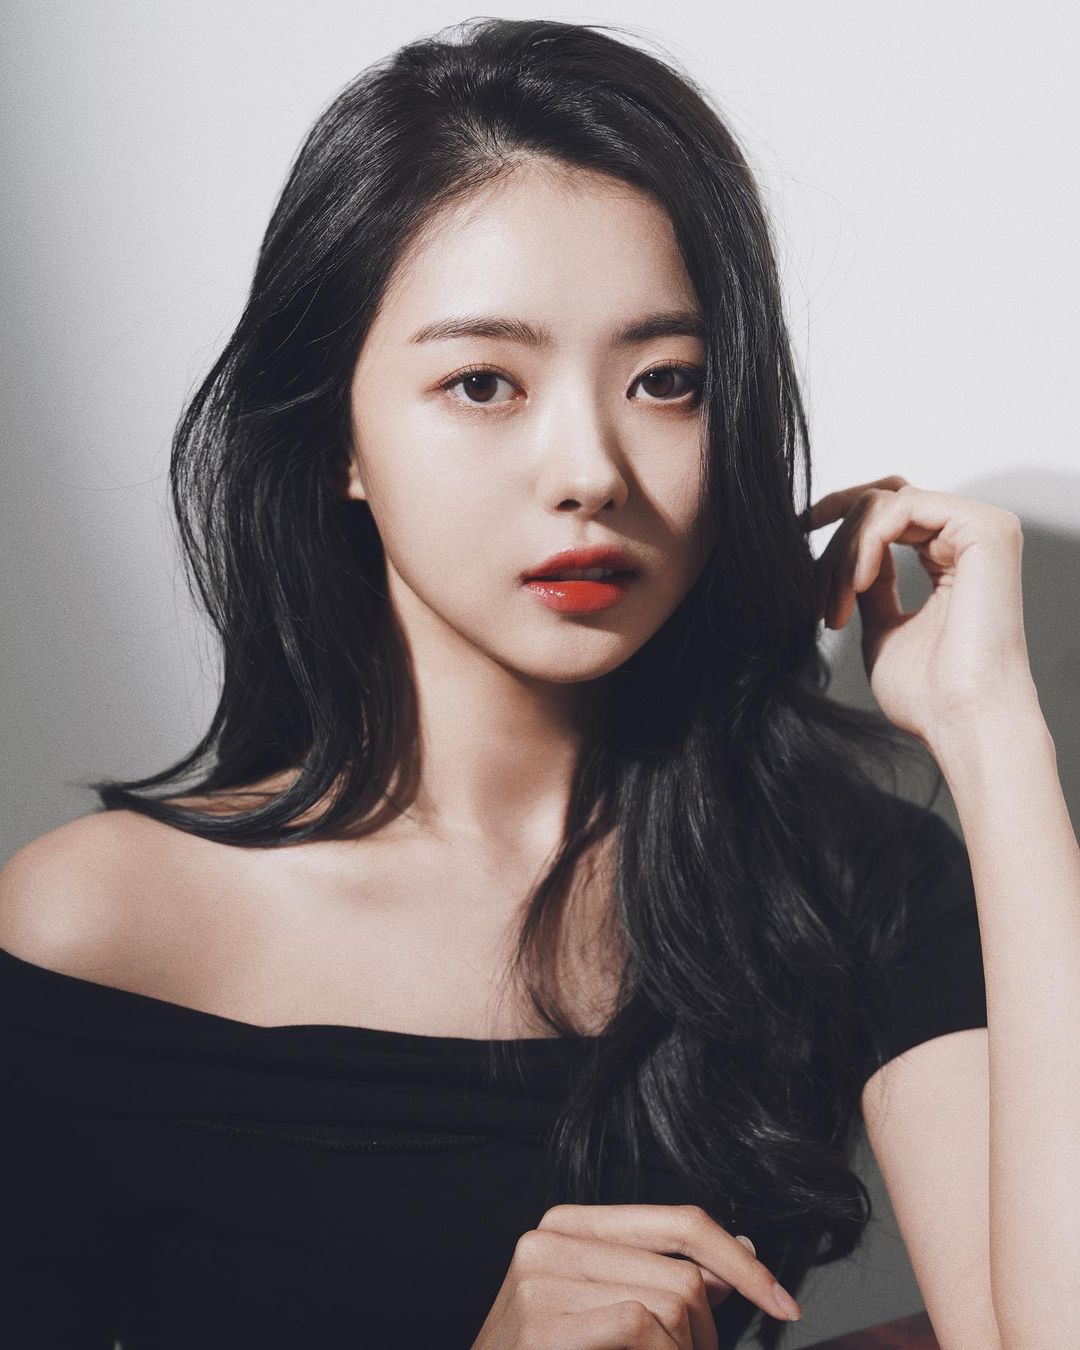 Digosipkan Pacar Kim Soo hyun, Ini Profil & Fakta Lim Nayoung